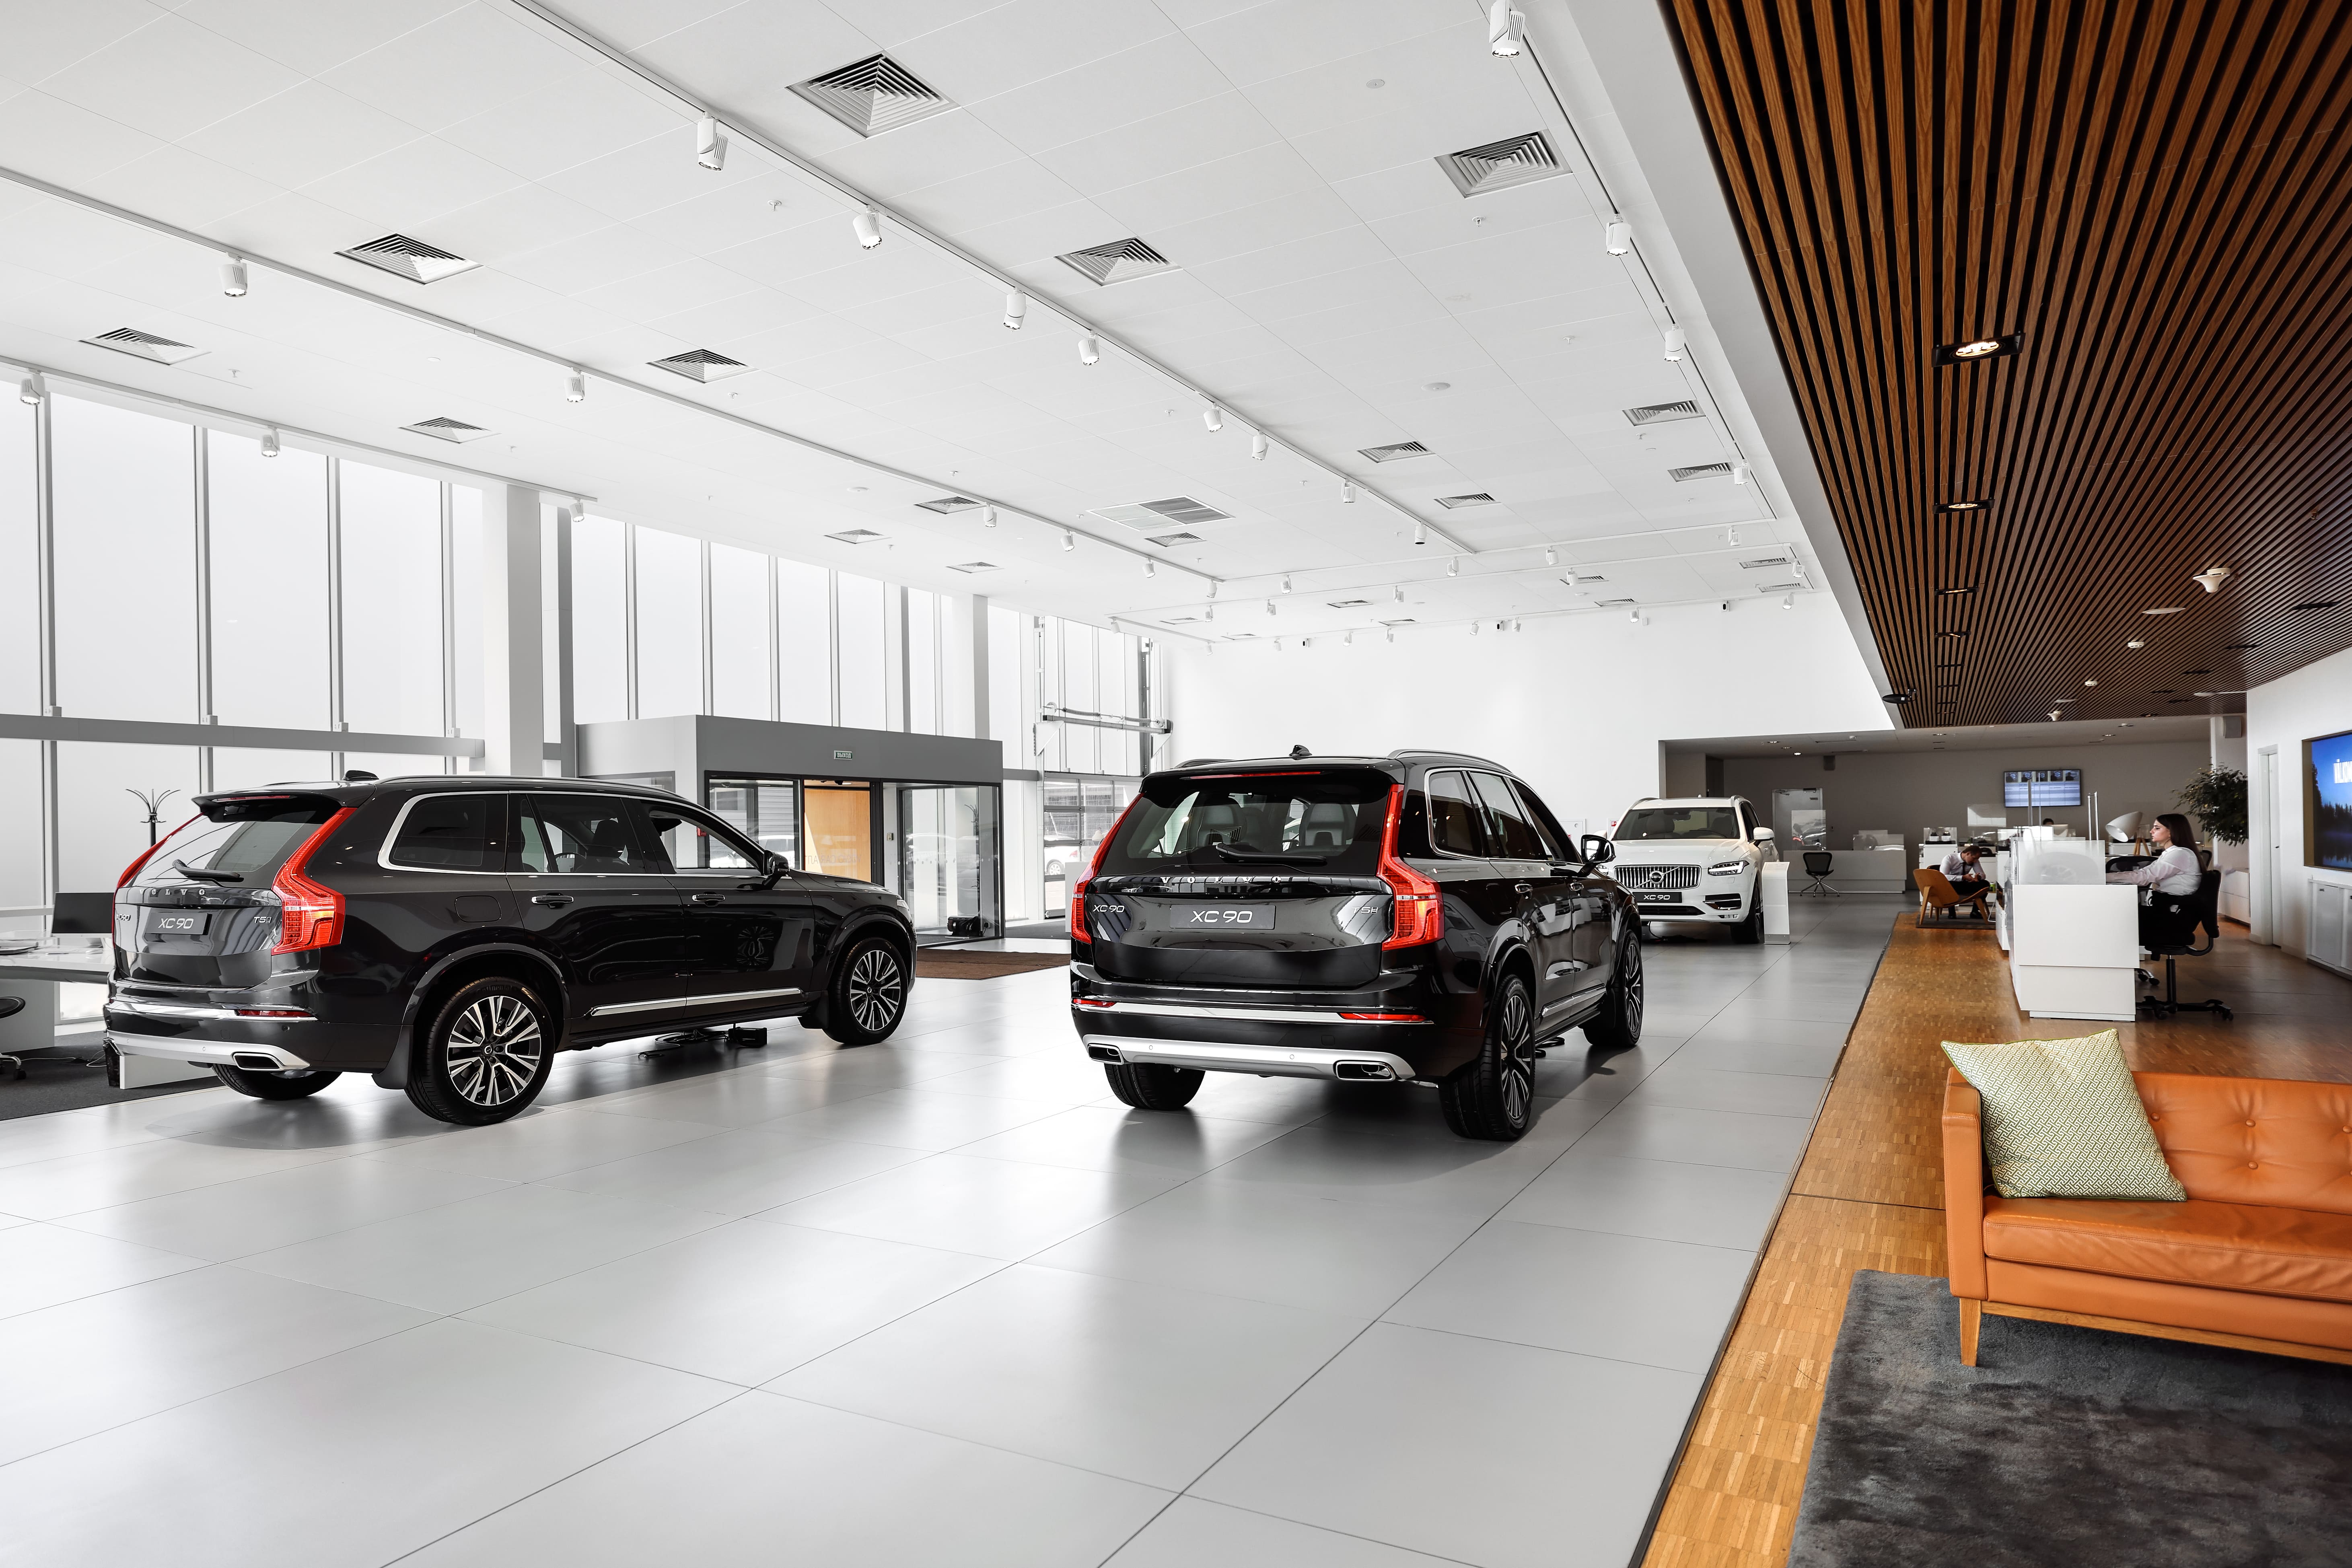 Volvo Car Алтуфьево предлагает широкий выбор автомобилей и сервис по привлекательным ценам   - фото 2